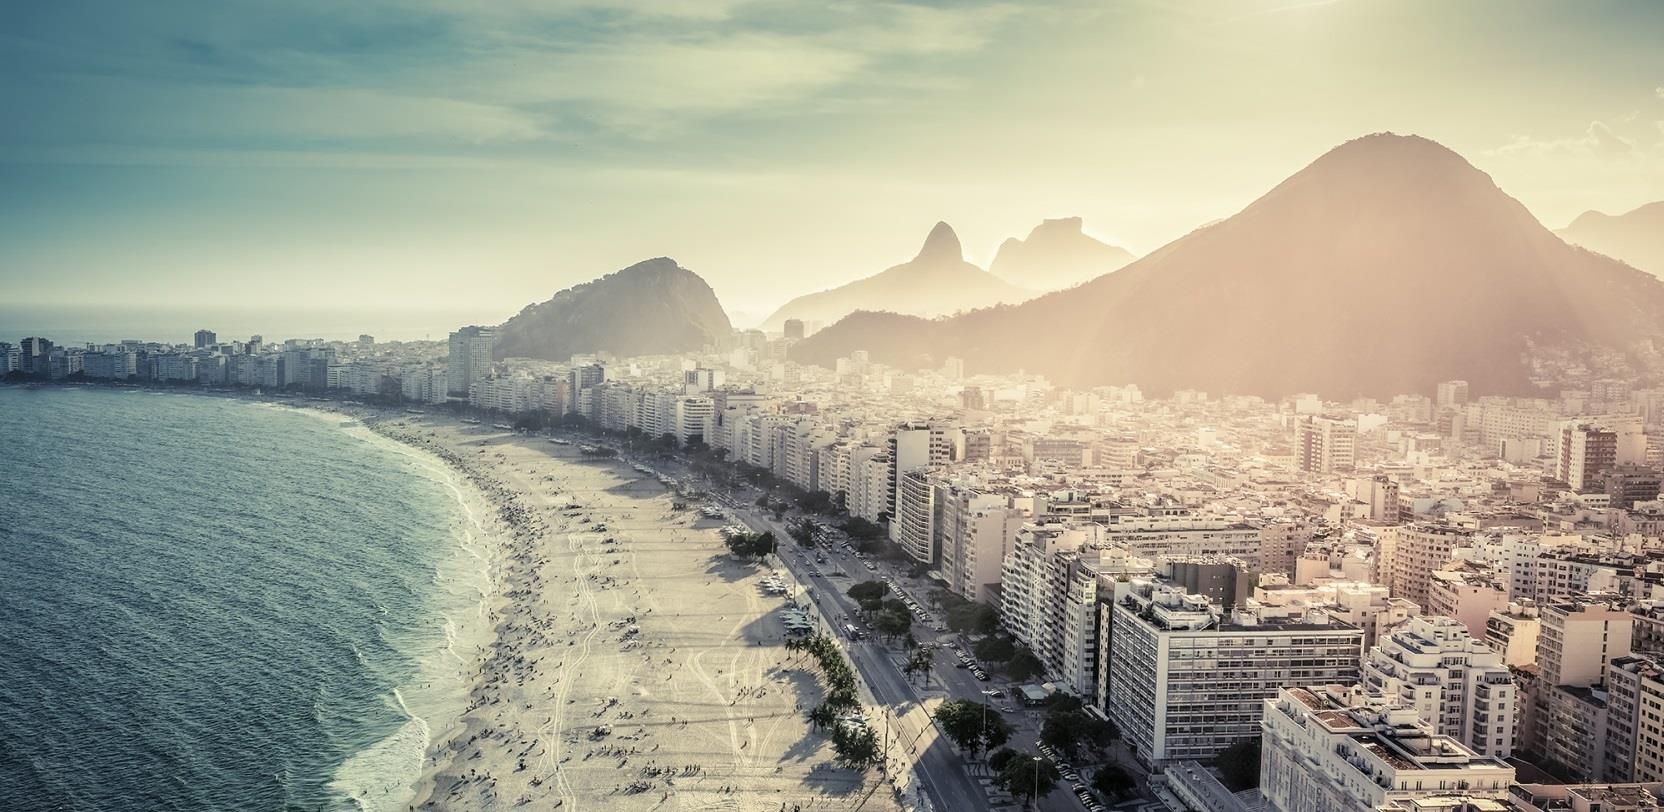 O Comitê Olímpico Brasileiro ressalta que Rio é a combinação perfeita entre as belas paisagens naturais e o espírito festivo carioca, que aliados à hospitalidade brasileira, compõem o cenário ideal